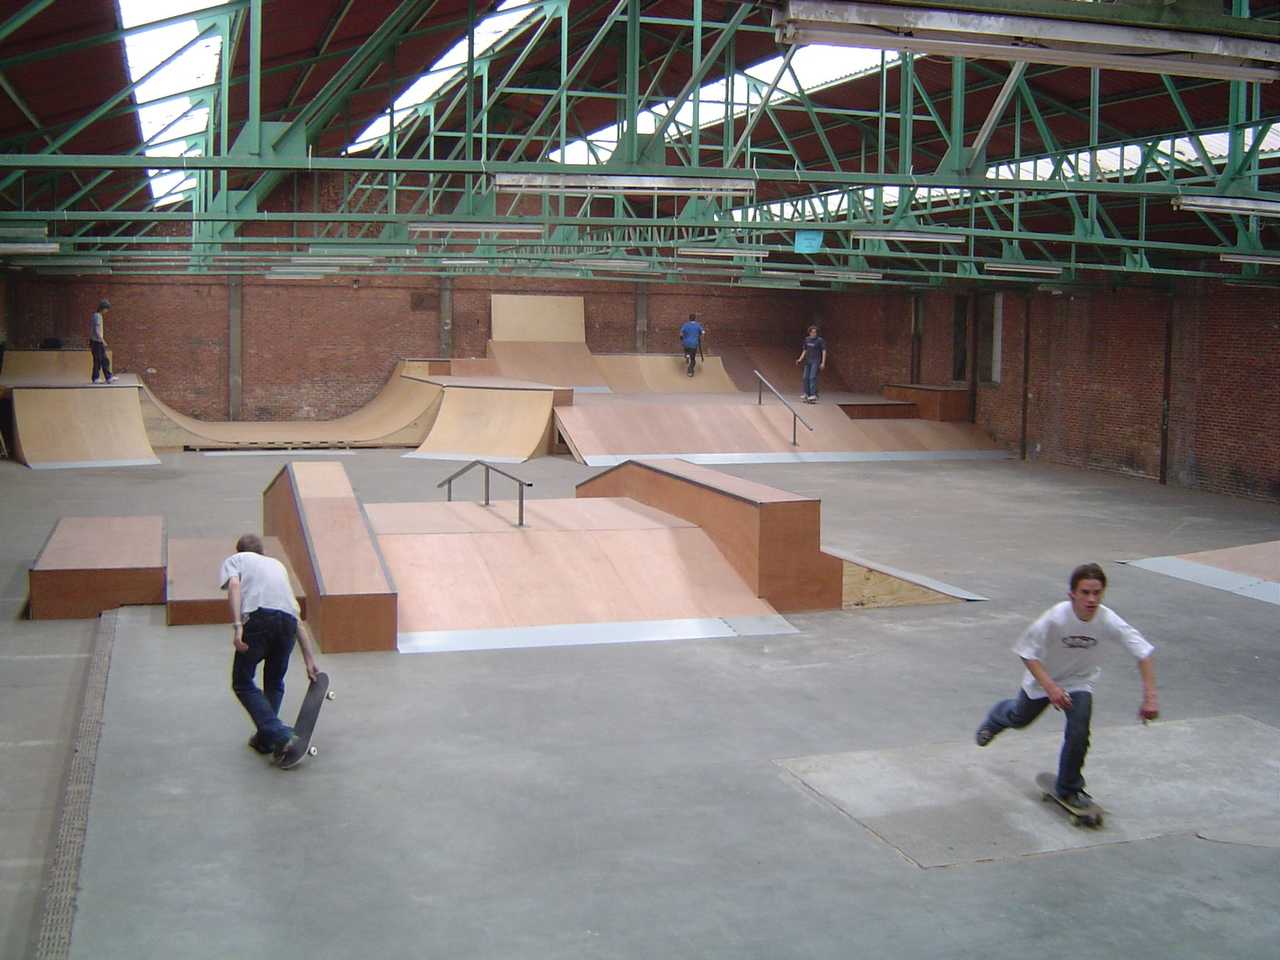 Old indoor skatepark